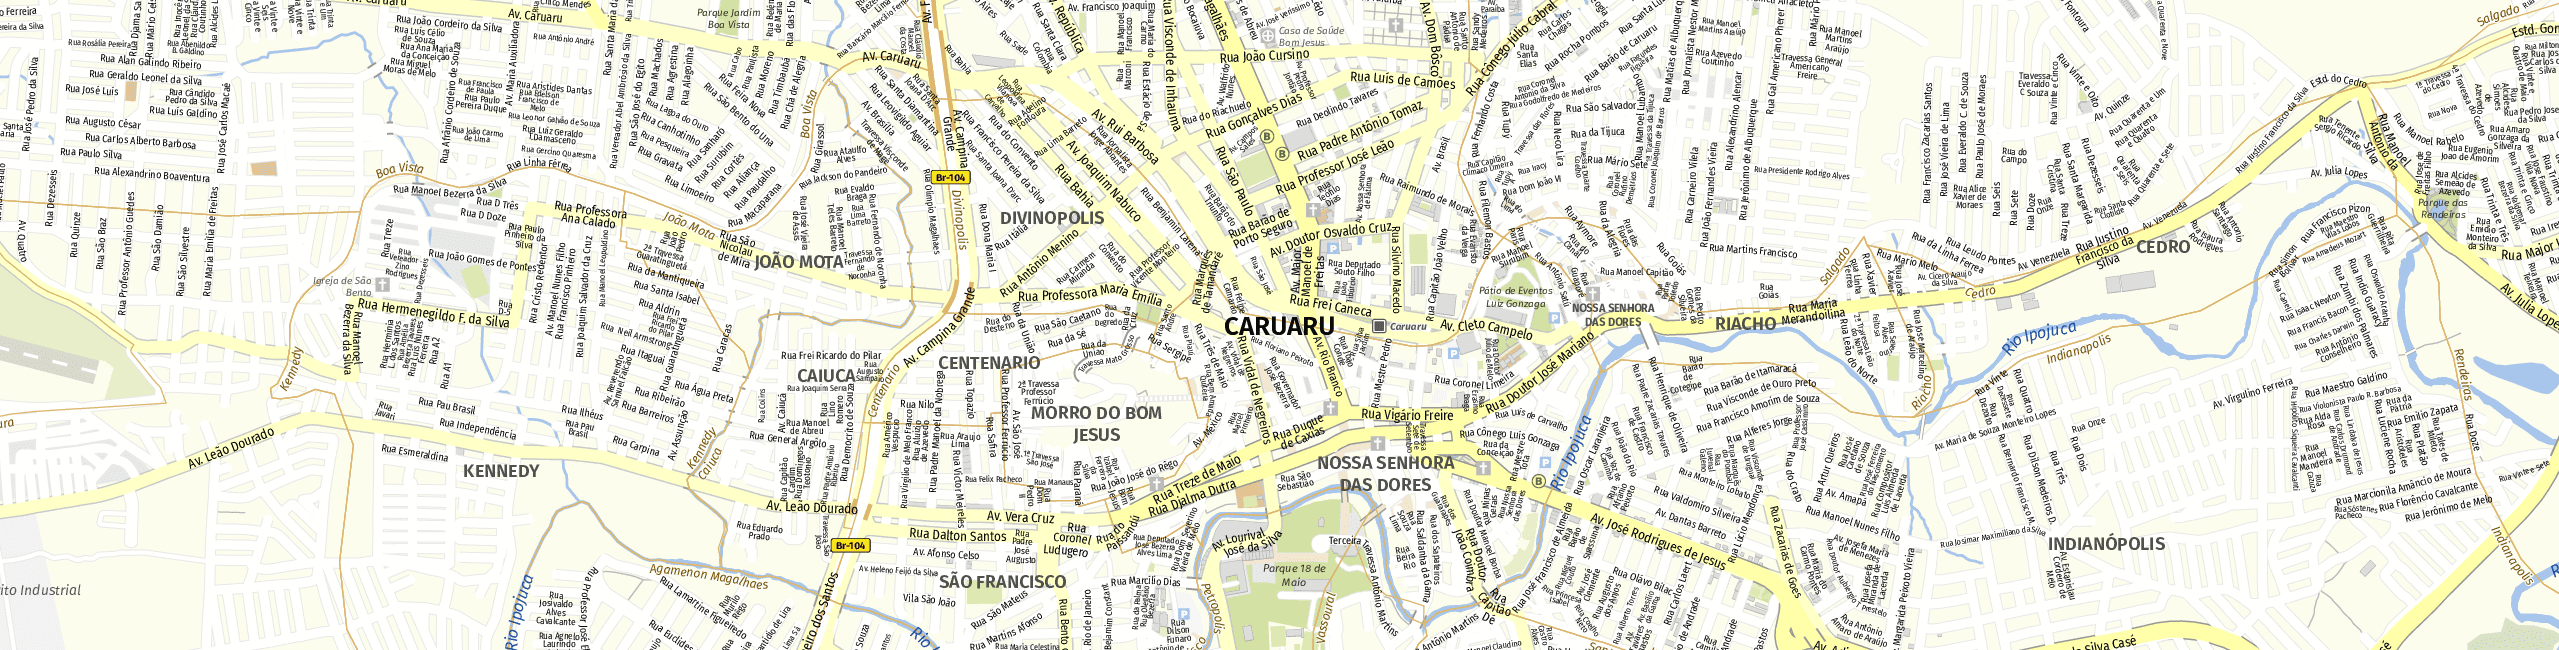 Stadtplan Caruaru zum Downloaden.